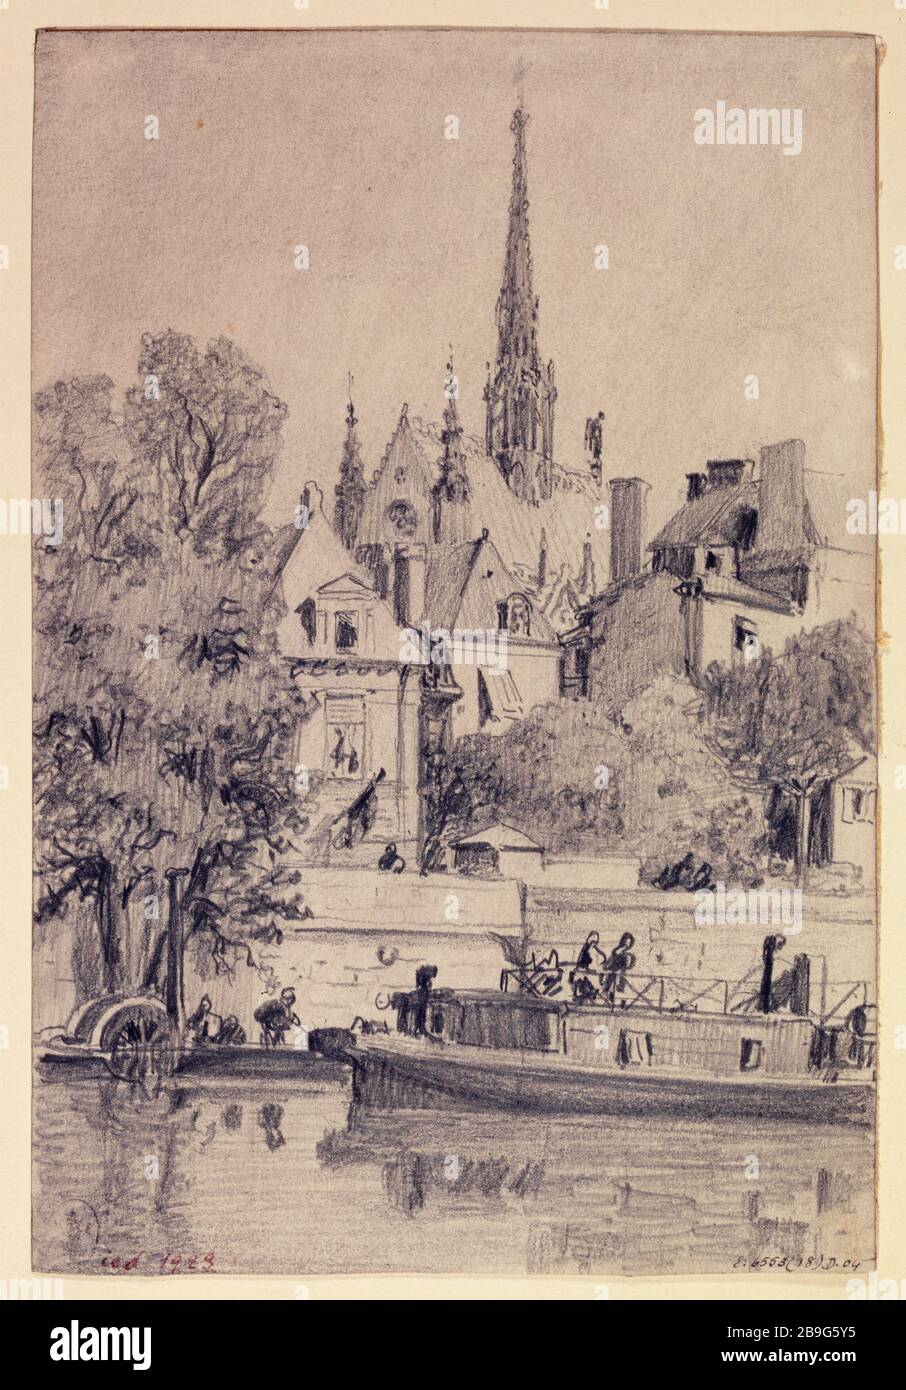 The dock Goldsmiths and the Sainte-Chapelle, 1866 Albert Maignan (1845-1908). Le quai des Orfèvres et la Sainte-Chapelle. Paris (Ier arr.), 1866. Mine de plomb. Paris, musée Carnavalet. Stock Photo